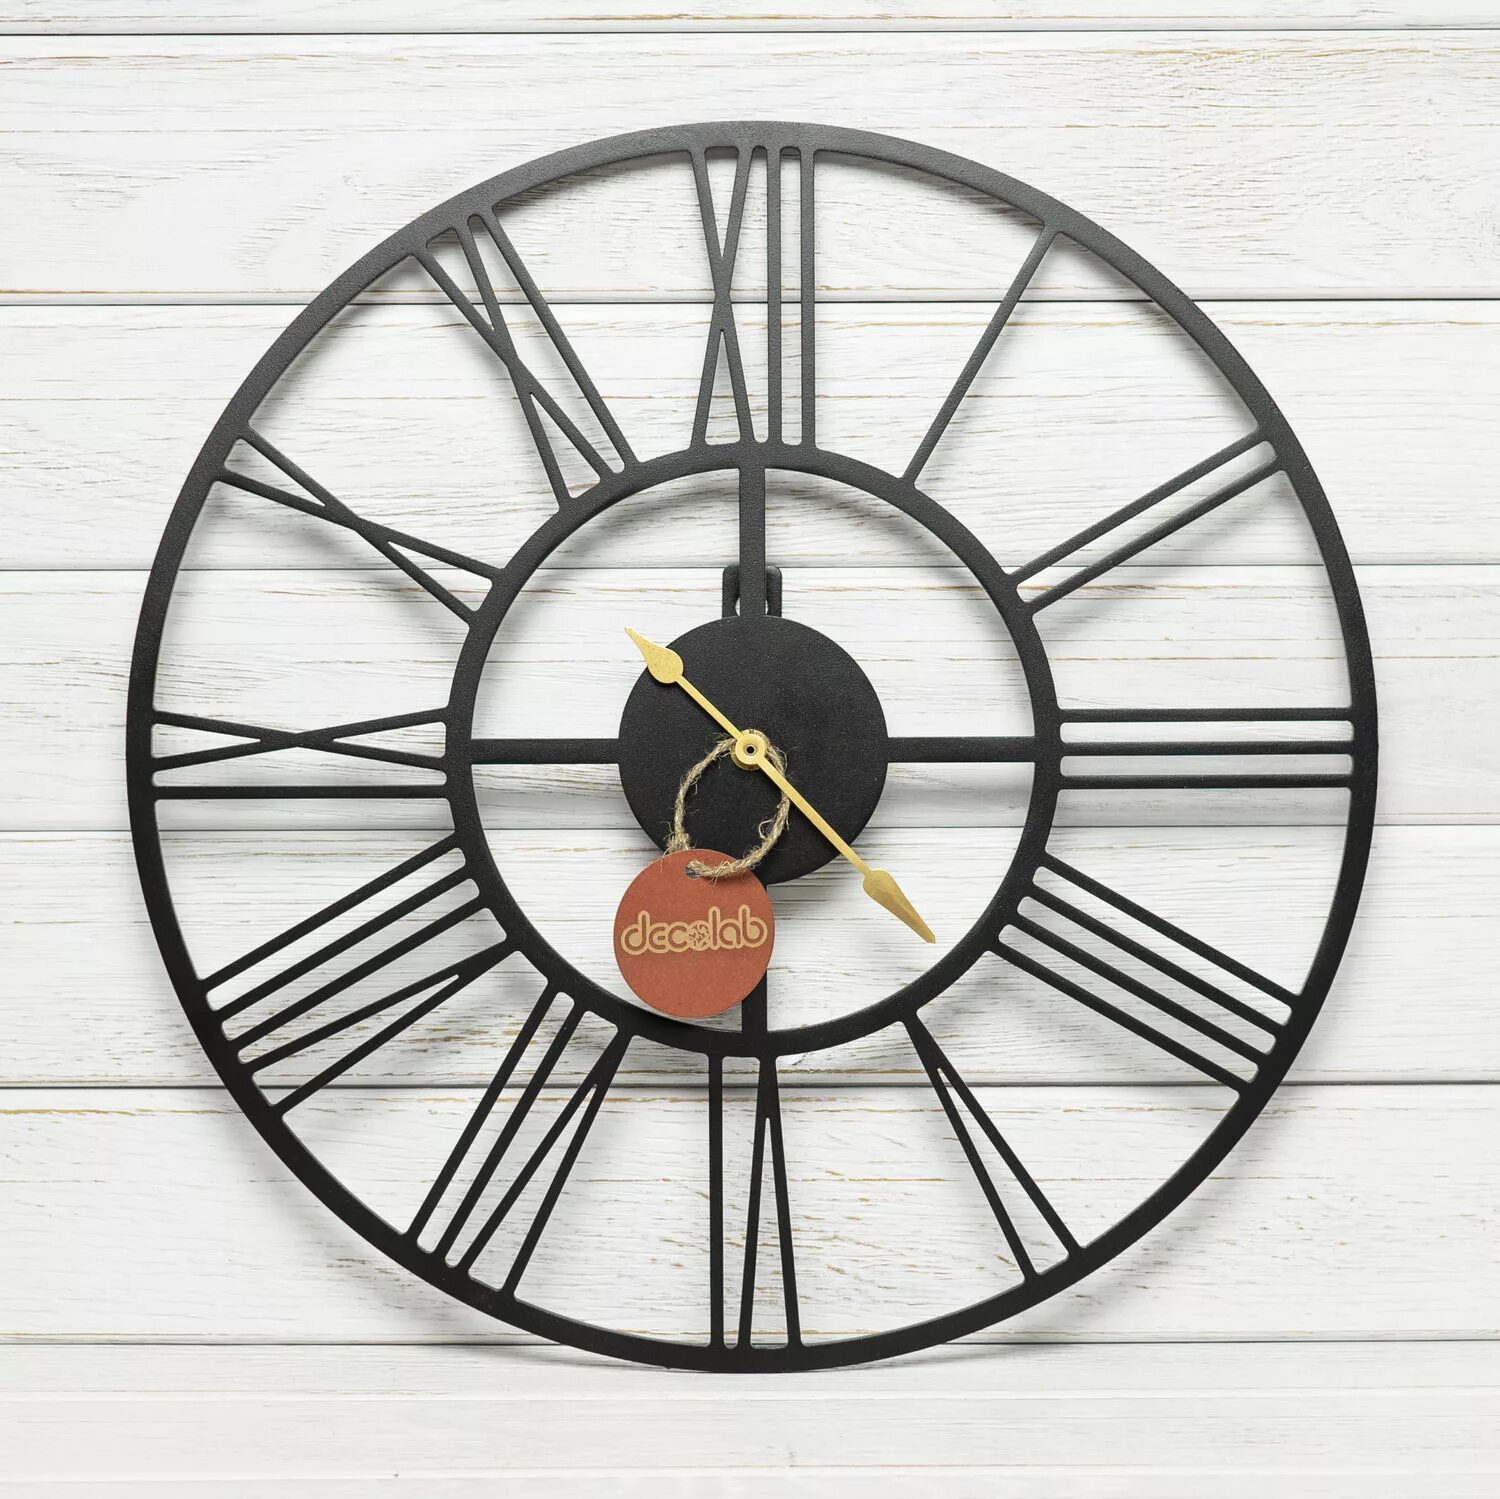 Настенные часы г. Римские часы настенные. Часы с римским циферблатом настенные. Часы настенные металлические черные с римским циферблатом. Римские переносные часы.